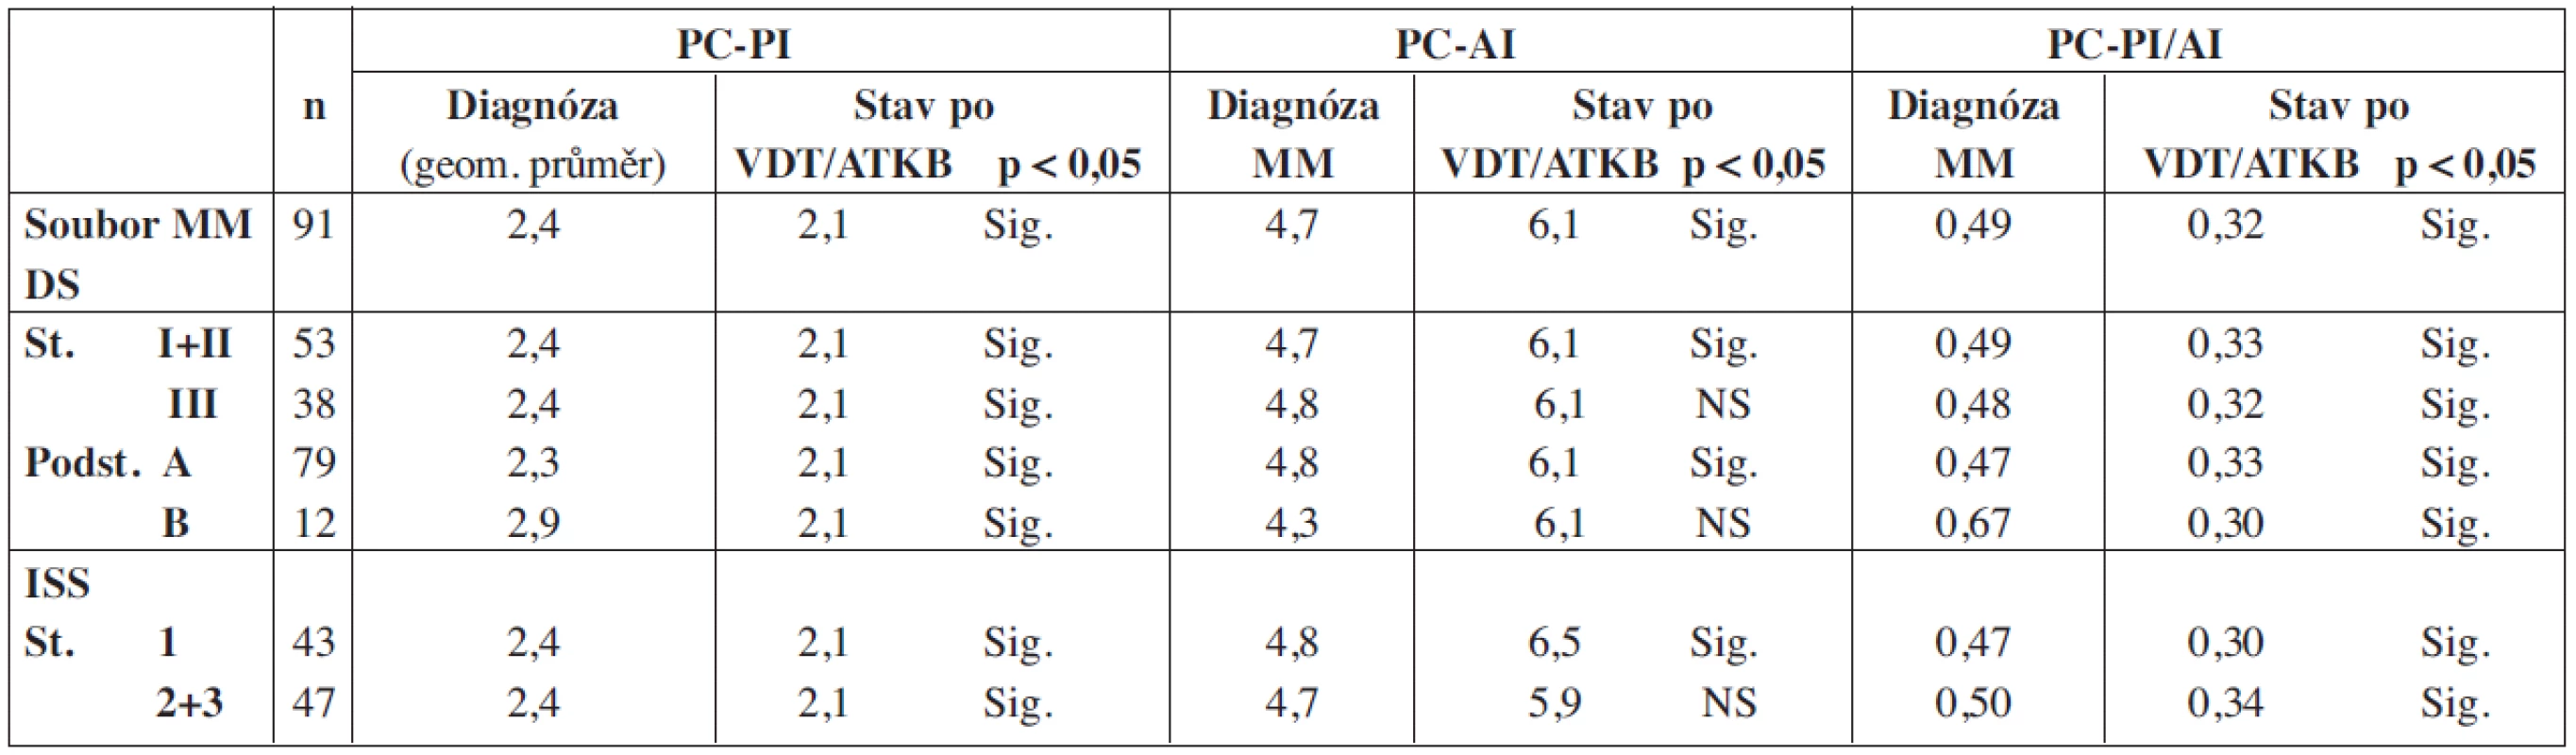 Srovnání proliferačního, propidium-jodidového (PC-PI) a apoptotického annexin-V indexu (PC-AI) včetně jejich poměru (PC-PI/AI) vyšetřených při diagnóze MM a po vysokodávkované chemoterapii s autologní transplantací kmenových buněk z pohledu vztahu ke klinickému stadiu nemoci.